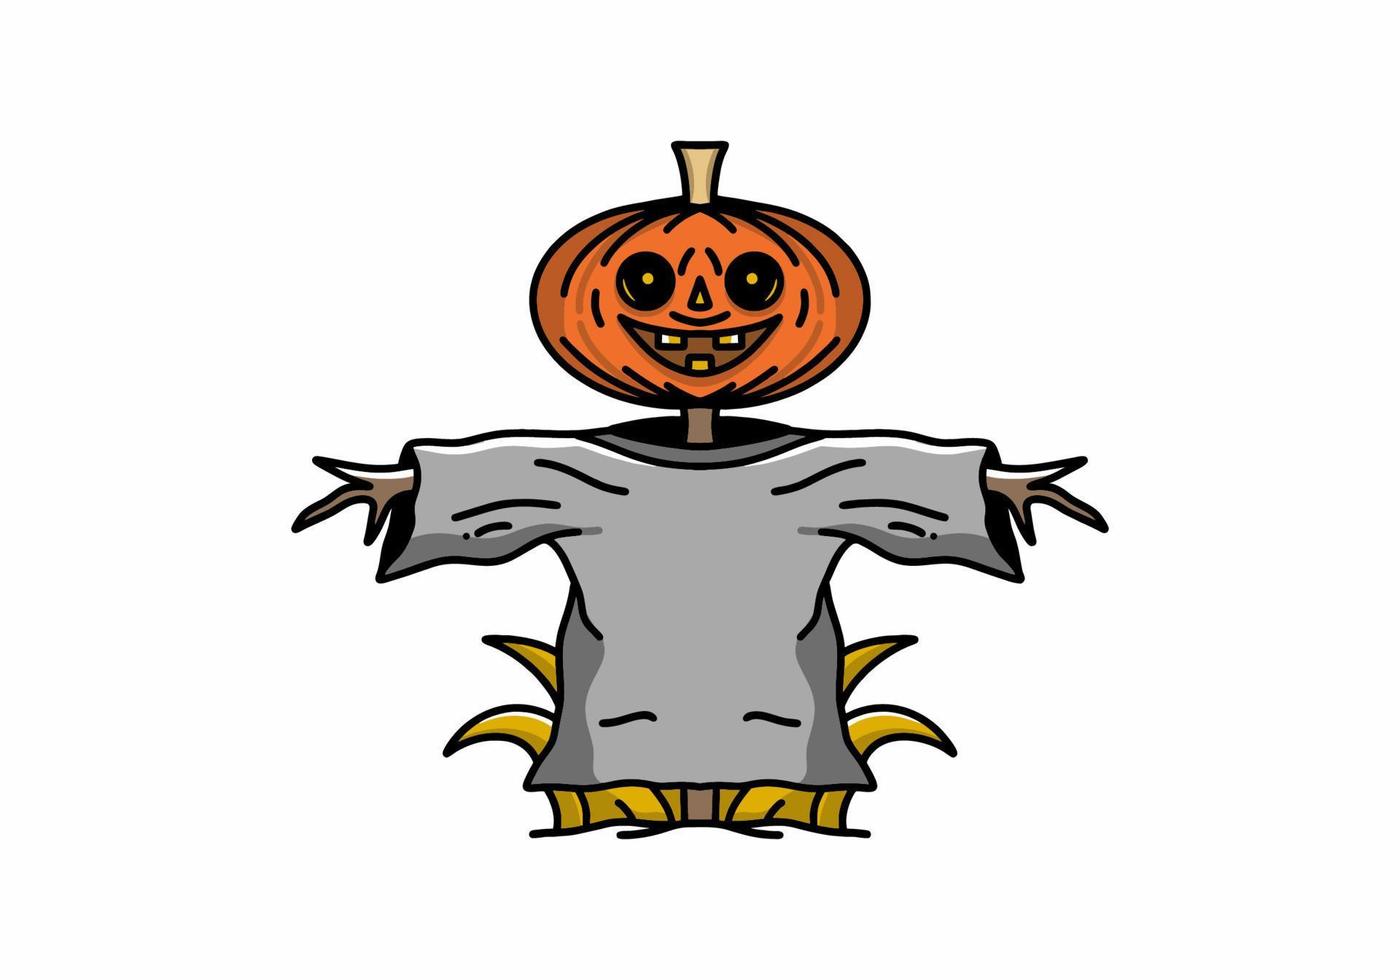 poupée de citrouille d'halloween dans la conception d'illustration de couleur orange et grise vecteur